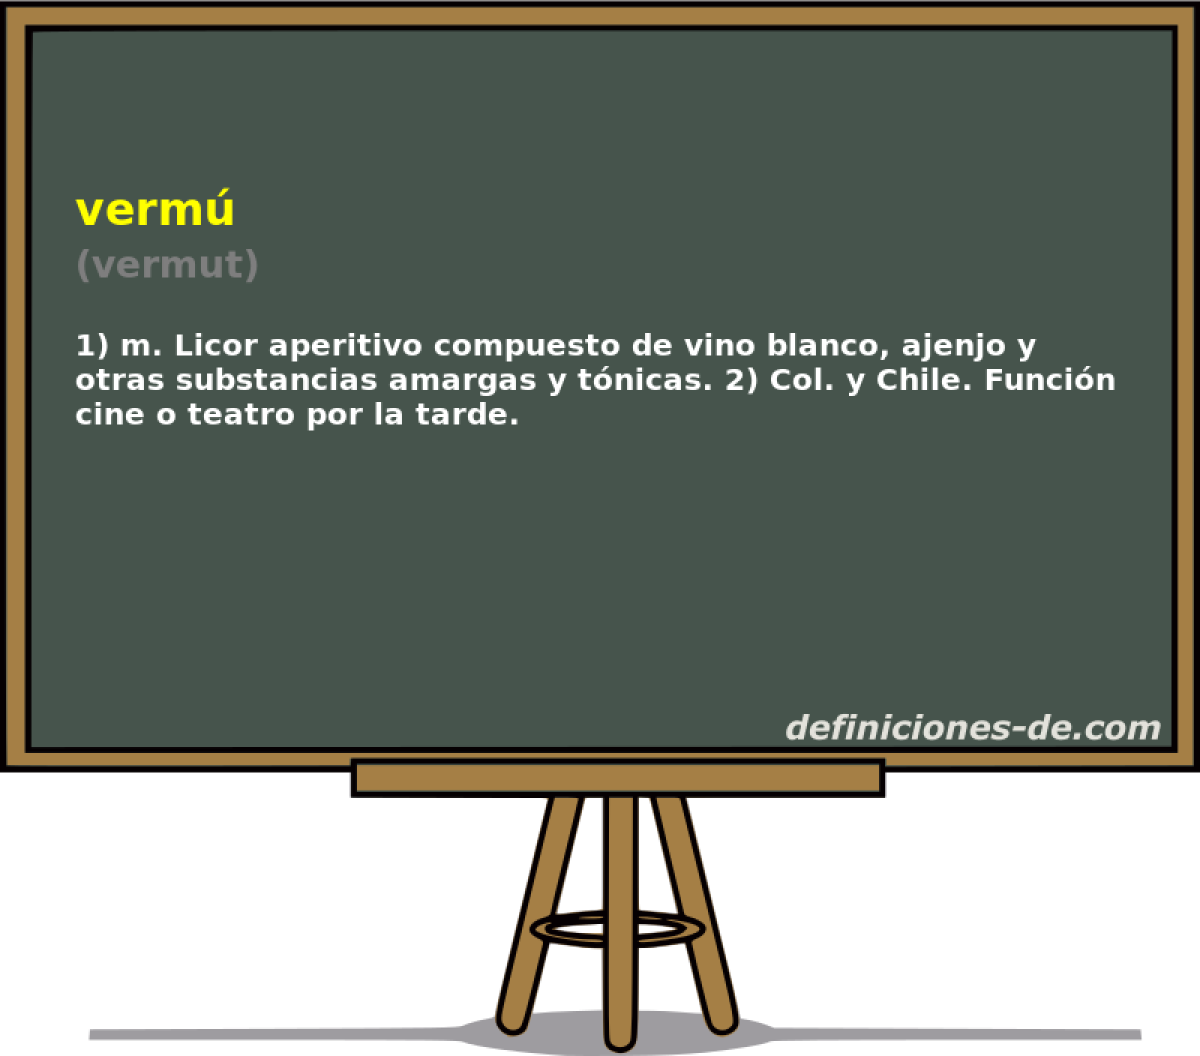 verm (vermut)